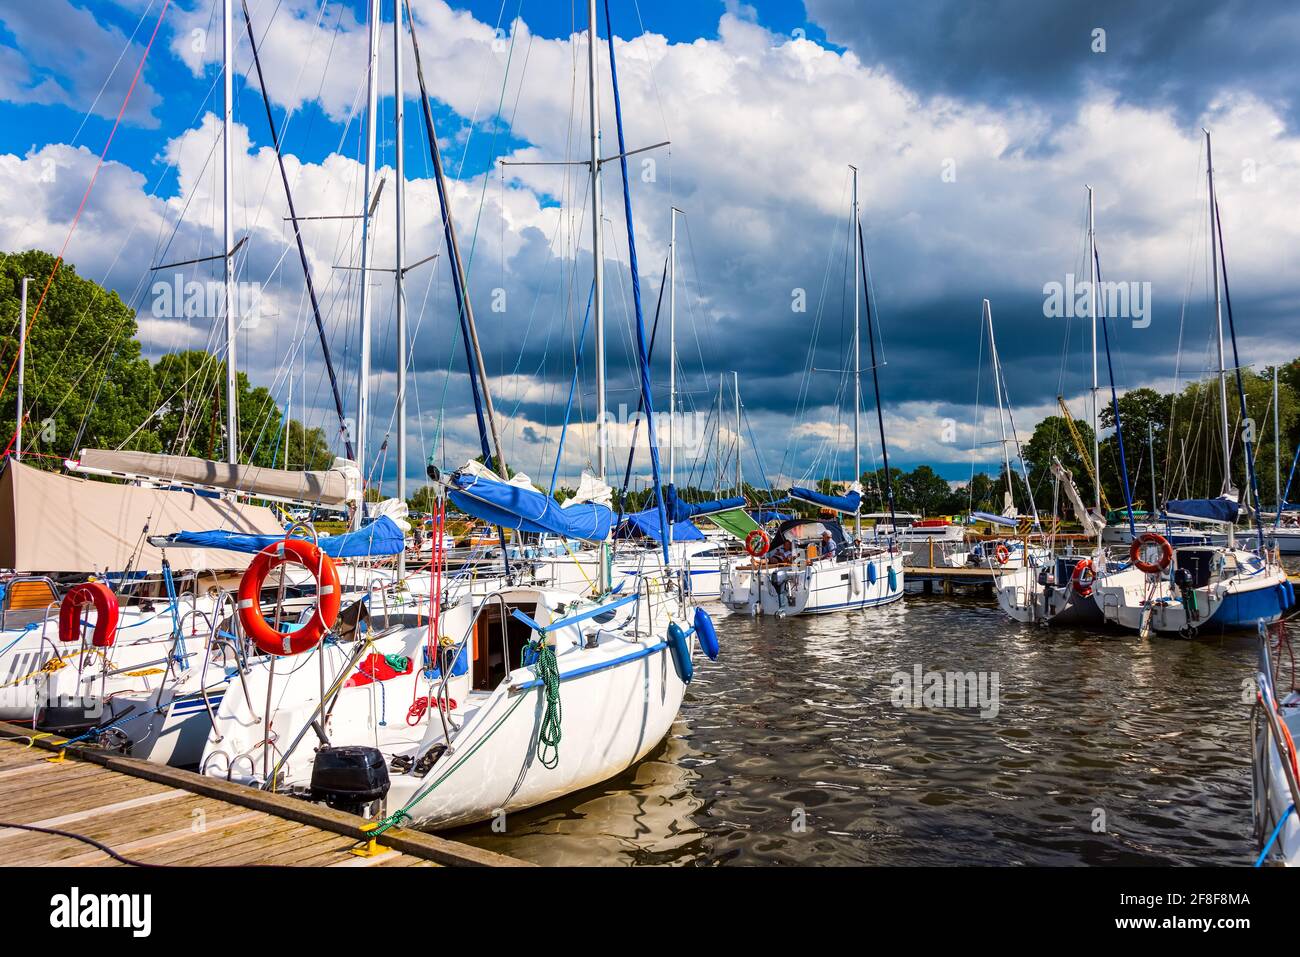 Yachten liegen in einem Hafen. Segelboote im Dock. Sommerferien, Kreuzfahrt, Erholung, Sport, Regatta, Freizeitaktivitäten, Service, Tourismus Stockfoto